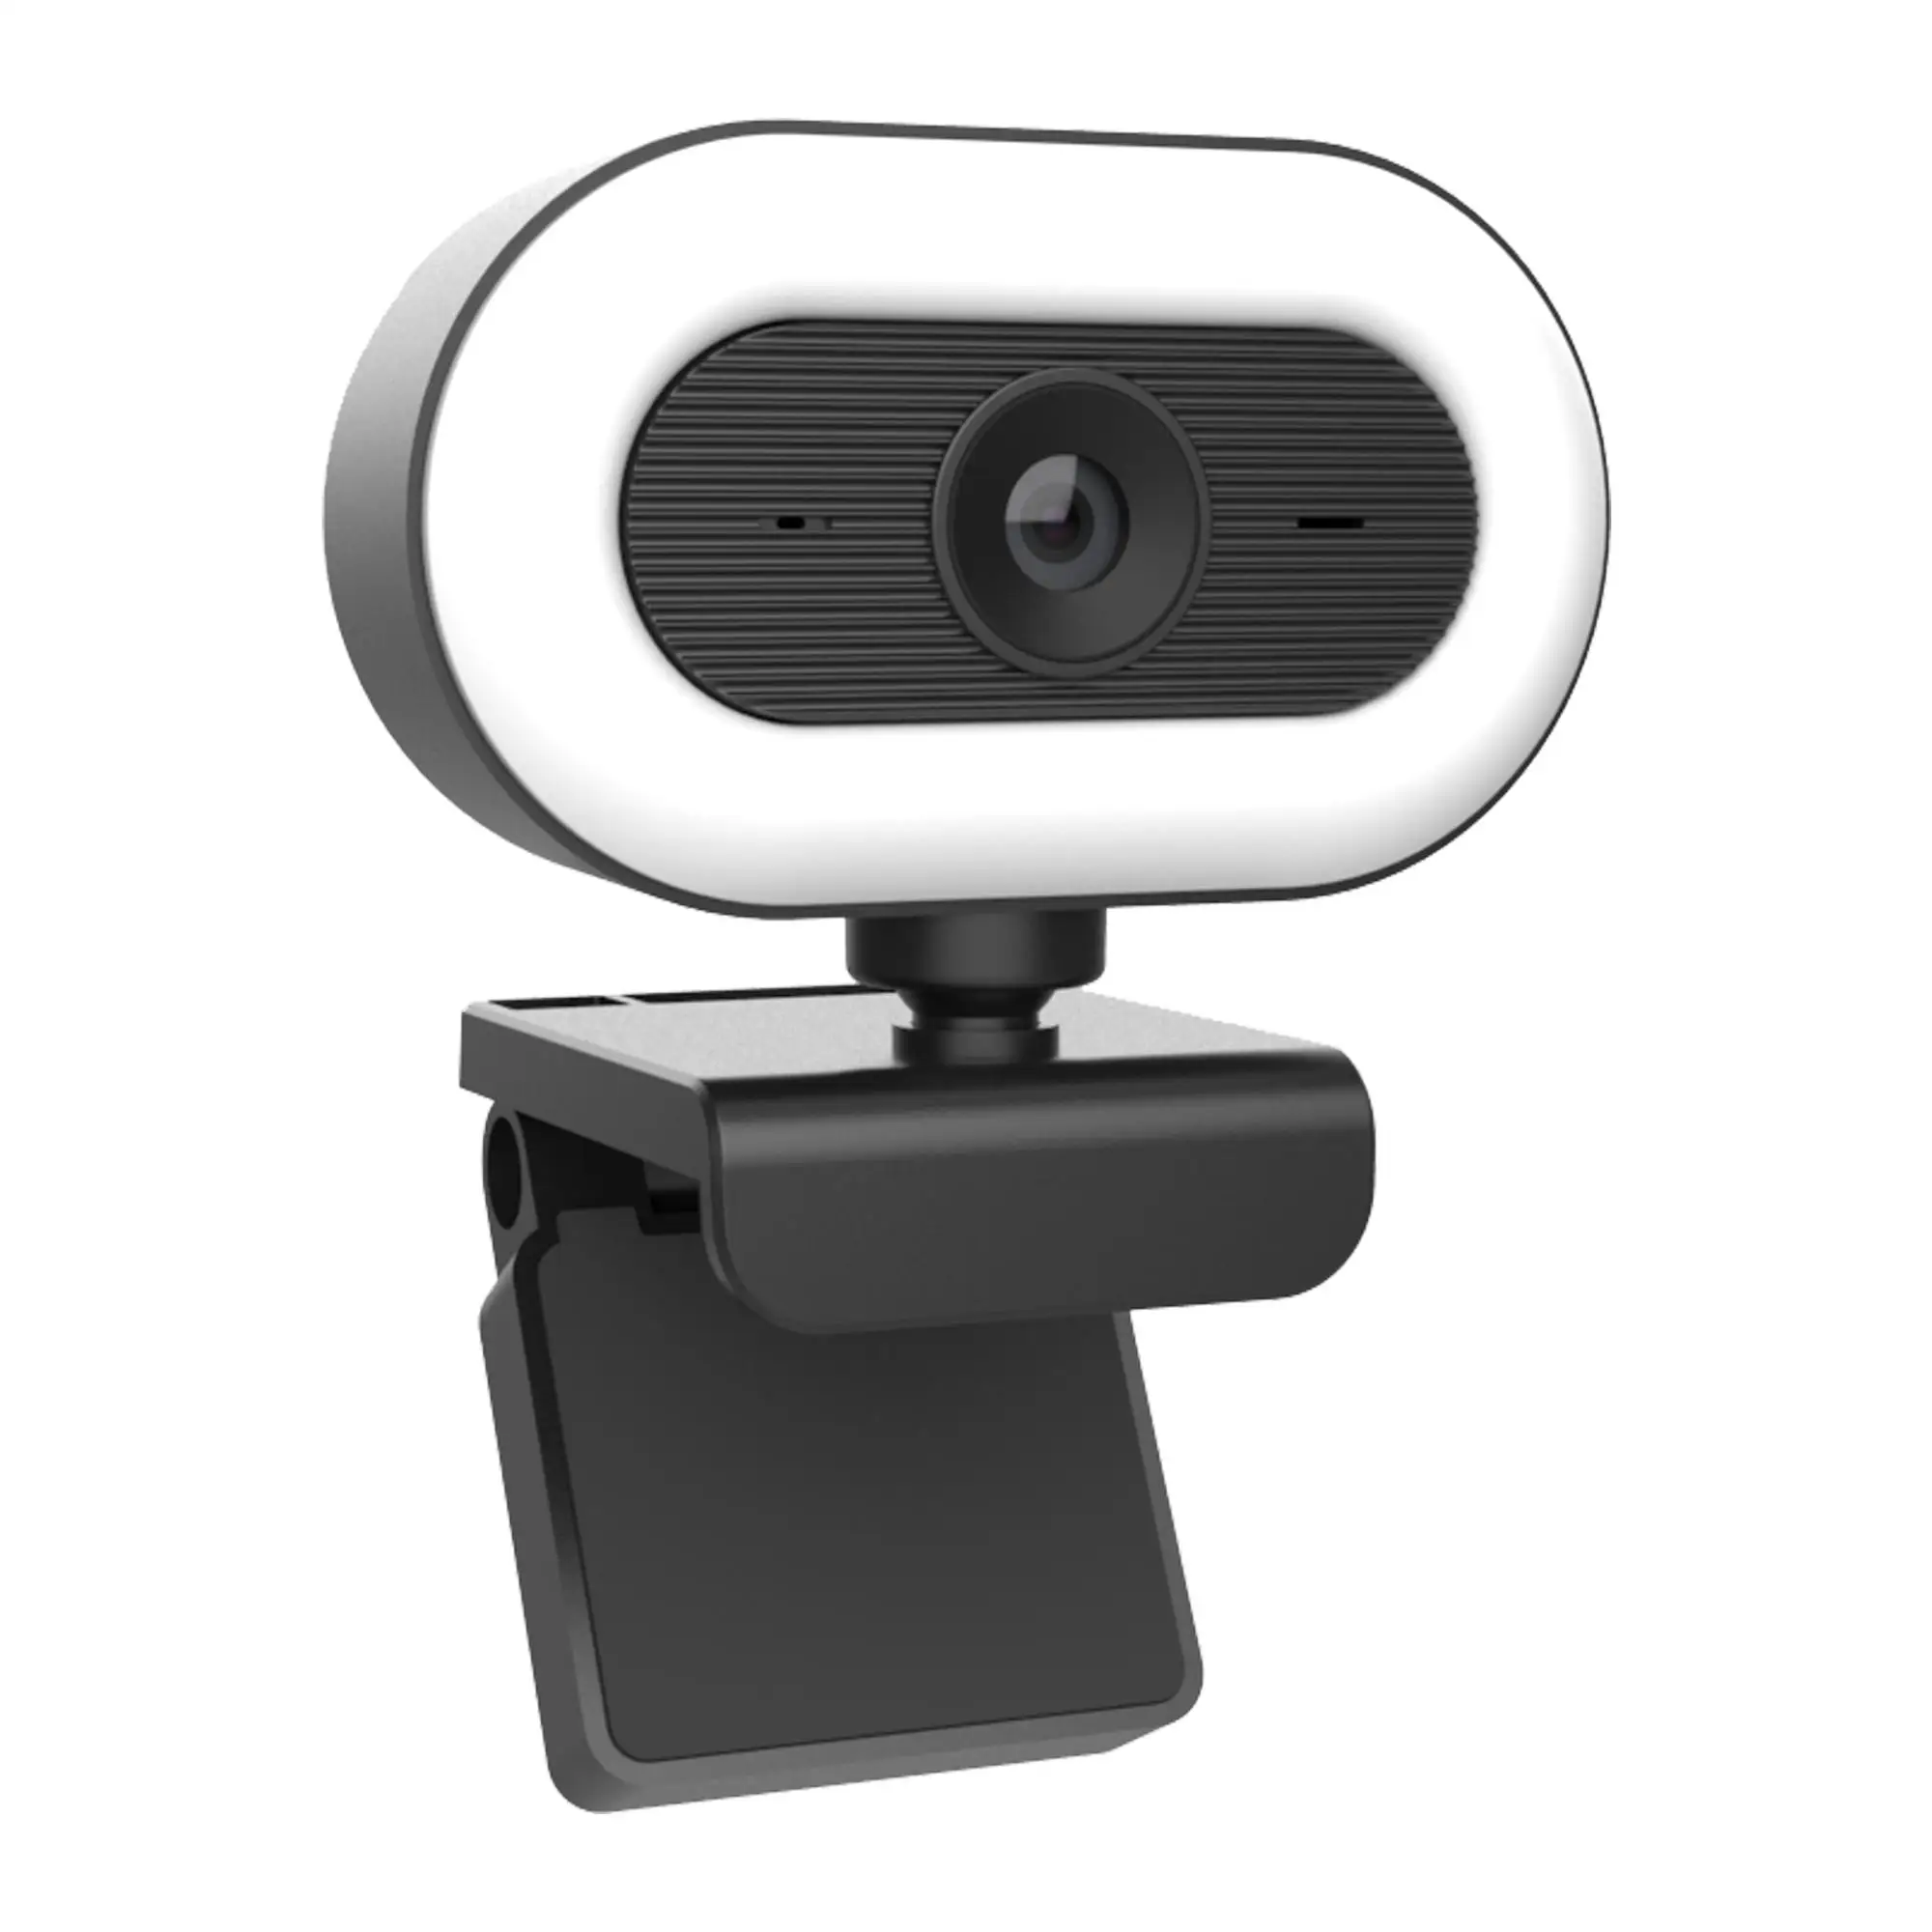 

New H.264 webcam 2K Full HD webcam 1080p with adjustable ring light for desktop computers, Black